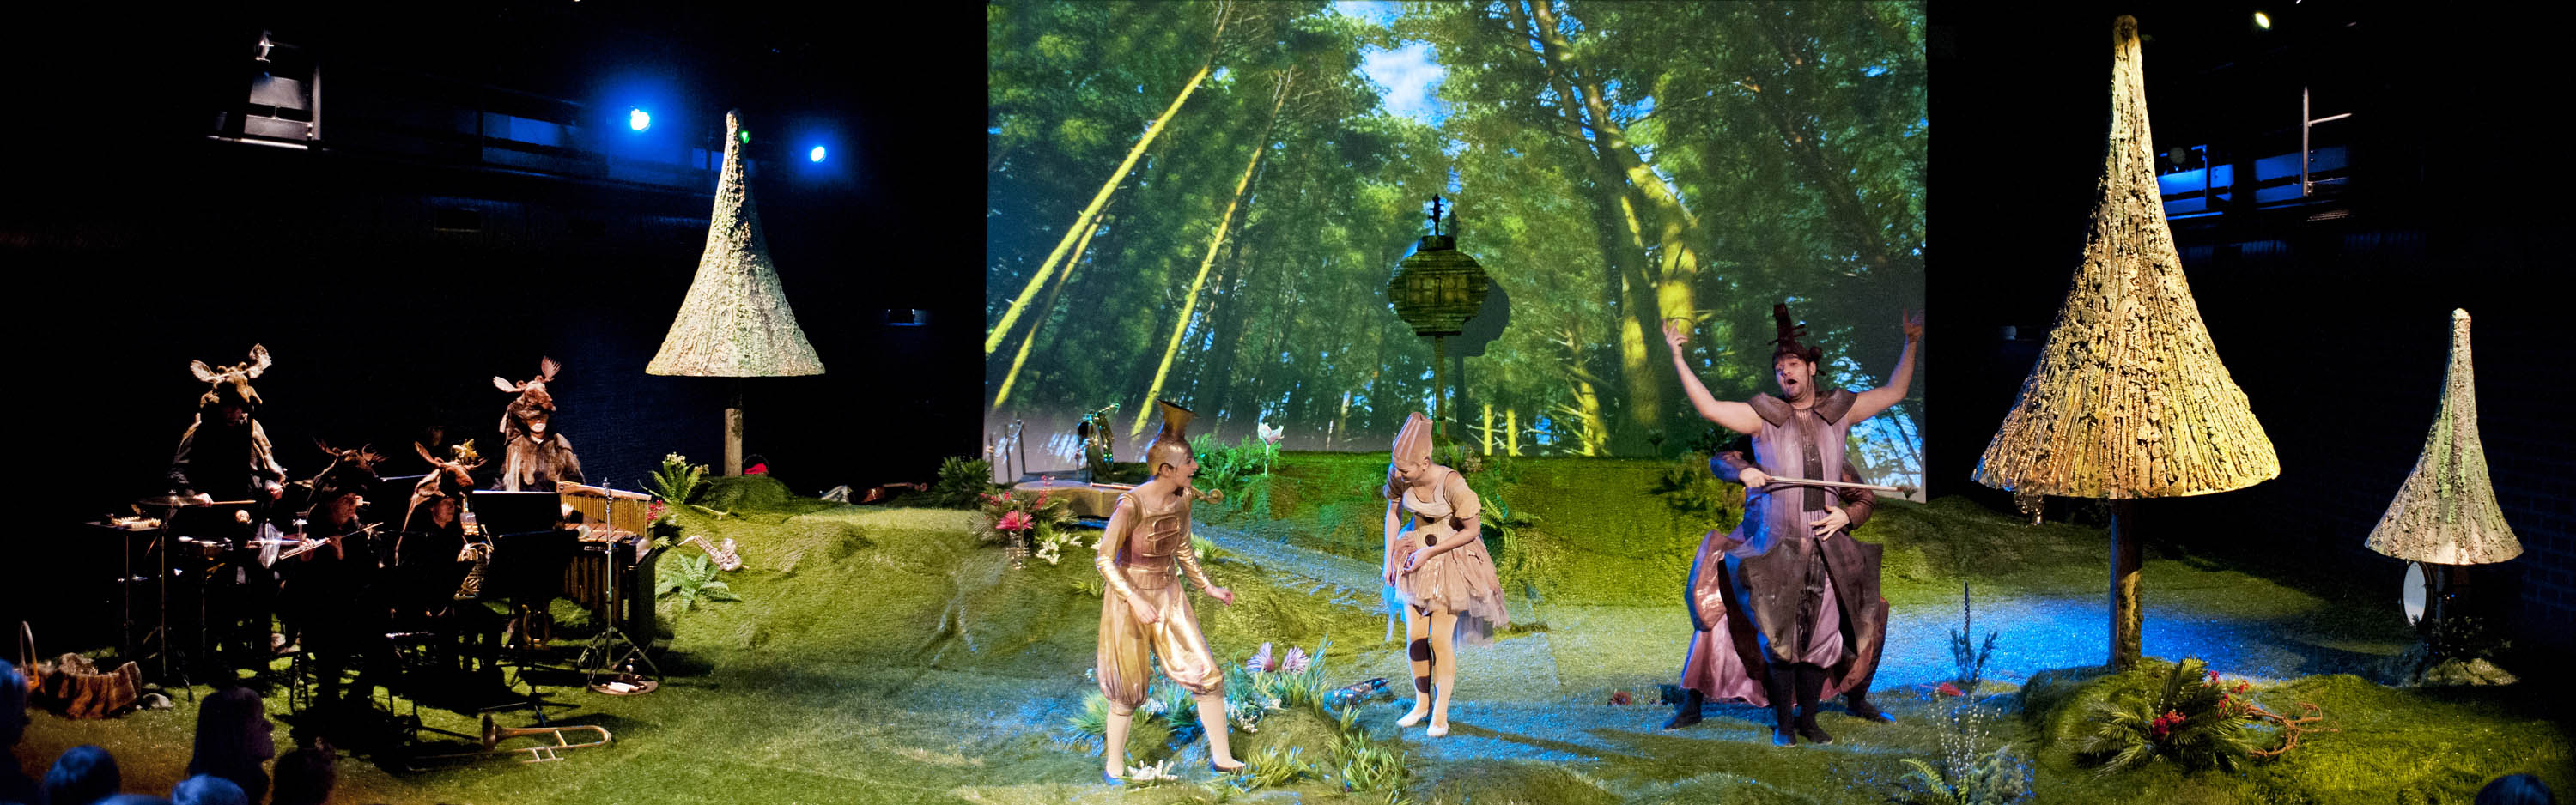 Na dużej polanie, na środku stoją trzy osoby w kostiumach w postaci instrumentów muzycznych: puzonu, fletu i kontrabasu. Po lewej stronie muzycy